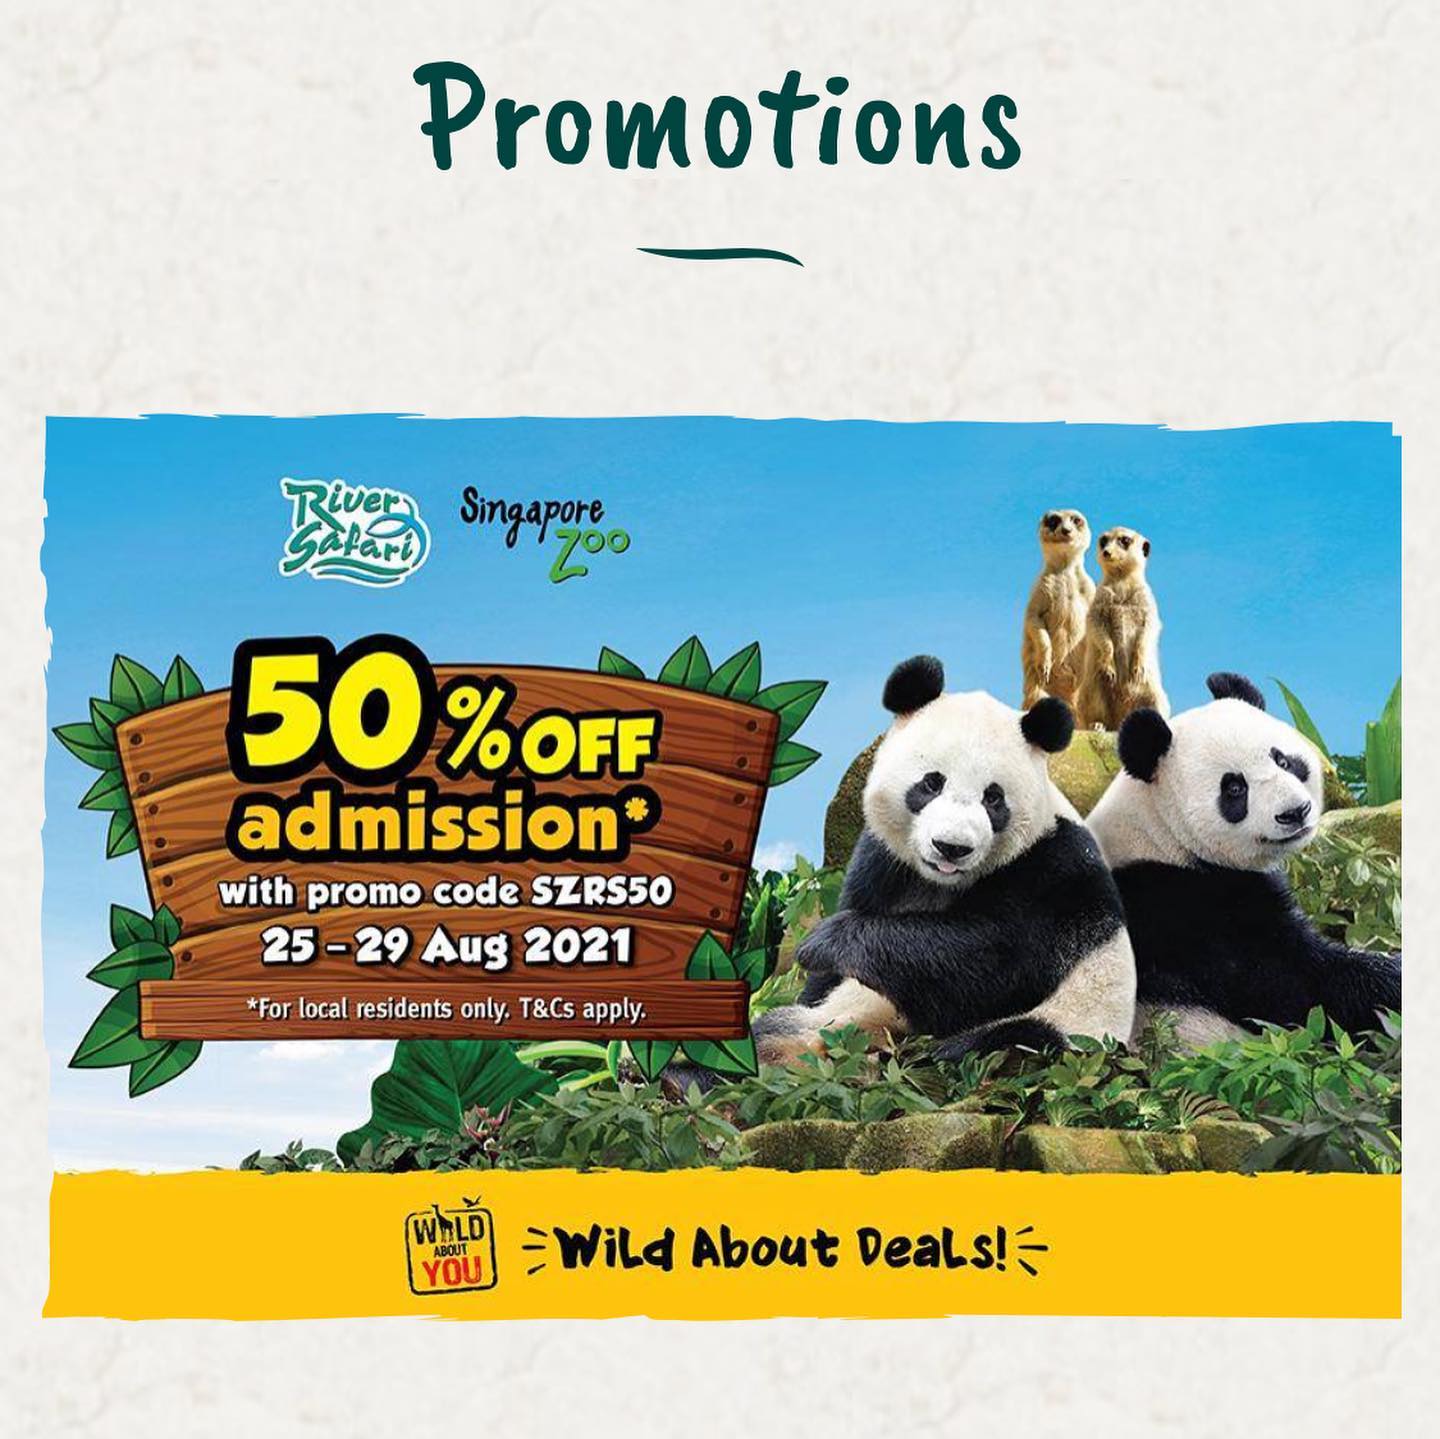 【50%オフ】River safari & Singapore zoo 